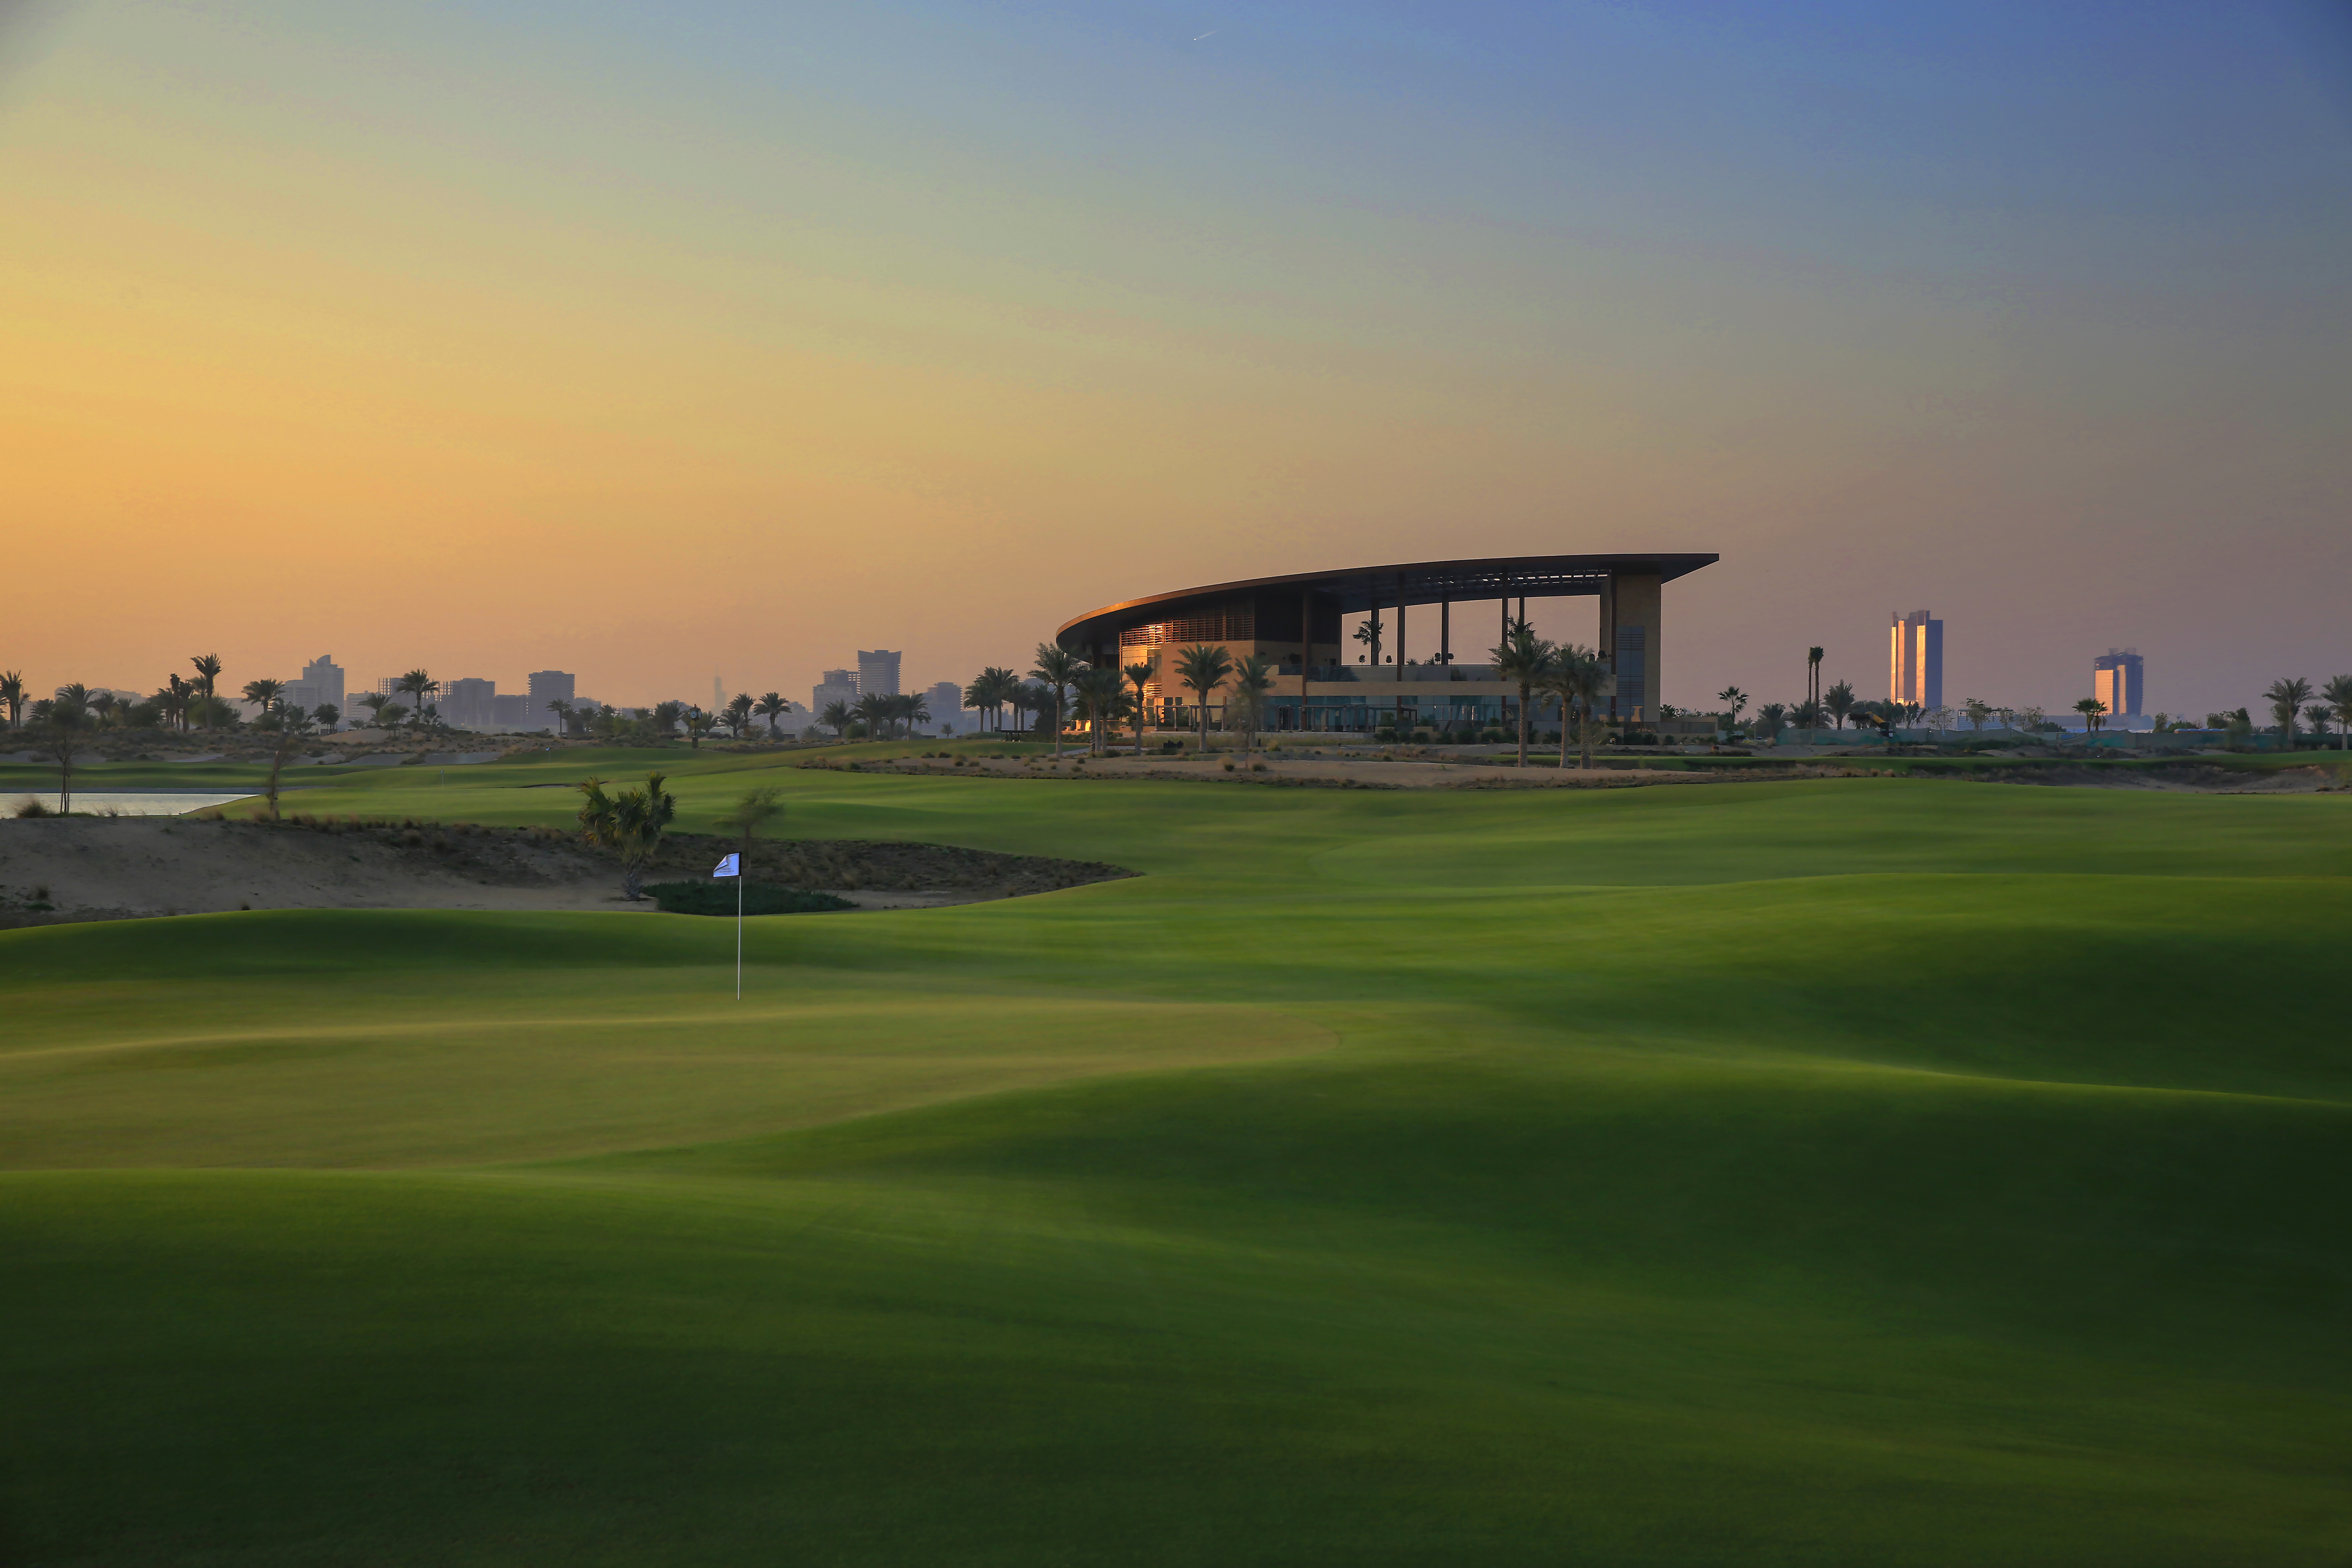 Trump International Golf Club in Dubai has won the award for 'Best Luxury Golf Club' in Dubai